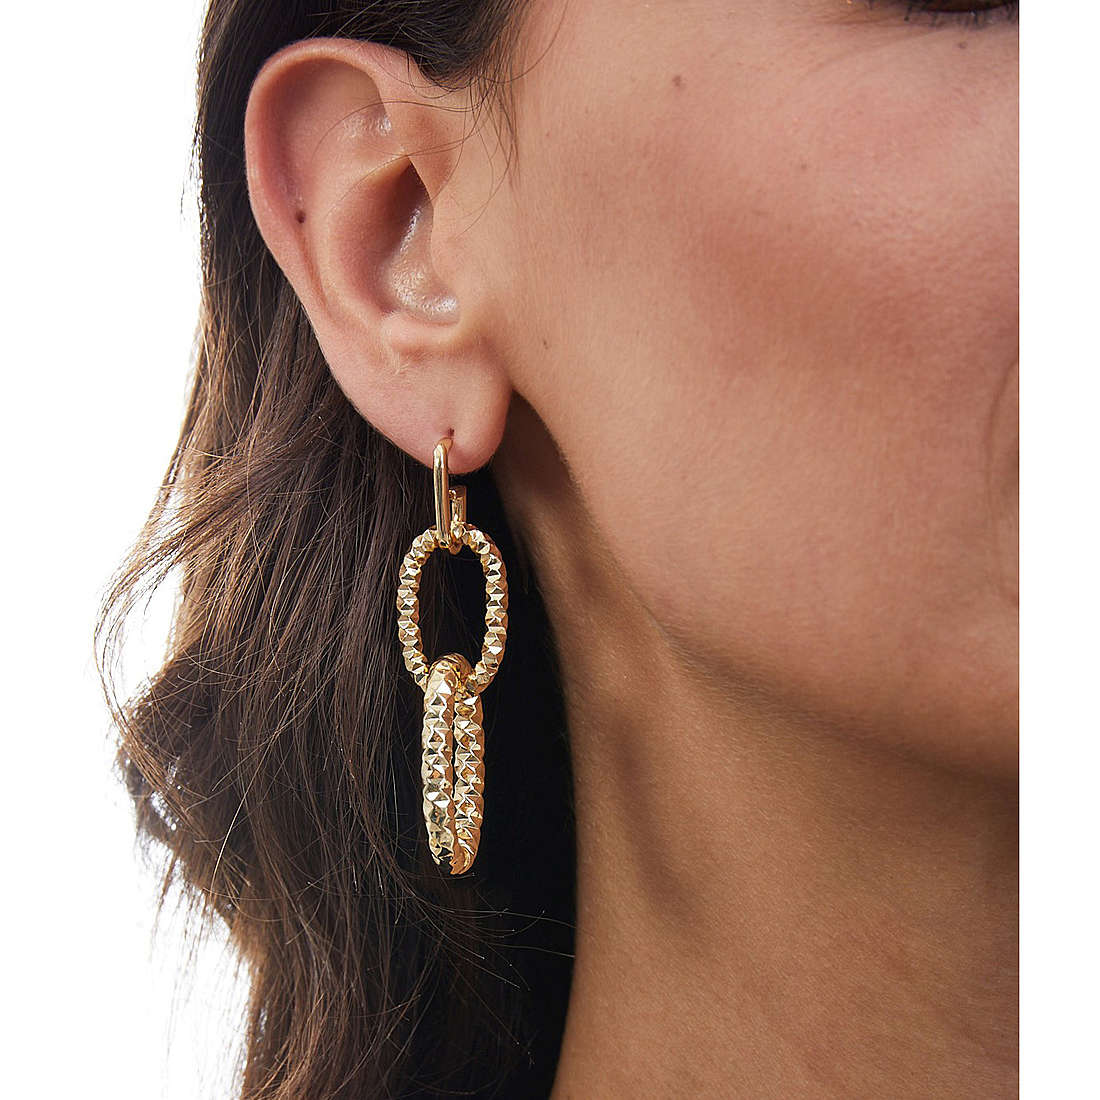 Unoaerre Fashion Jewellery boucles d'oreille Classica femme 1AR1897 Je porte